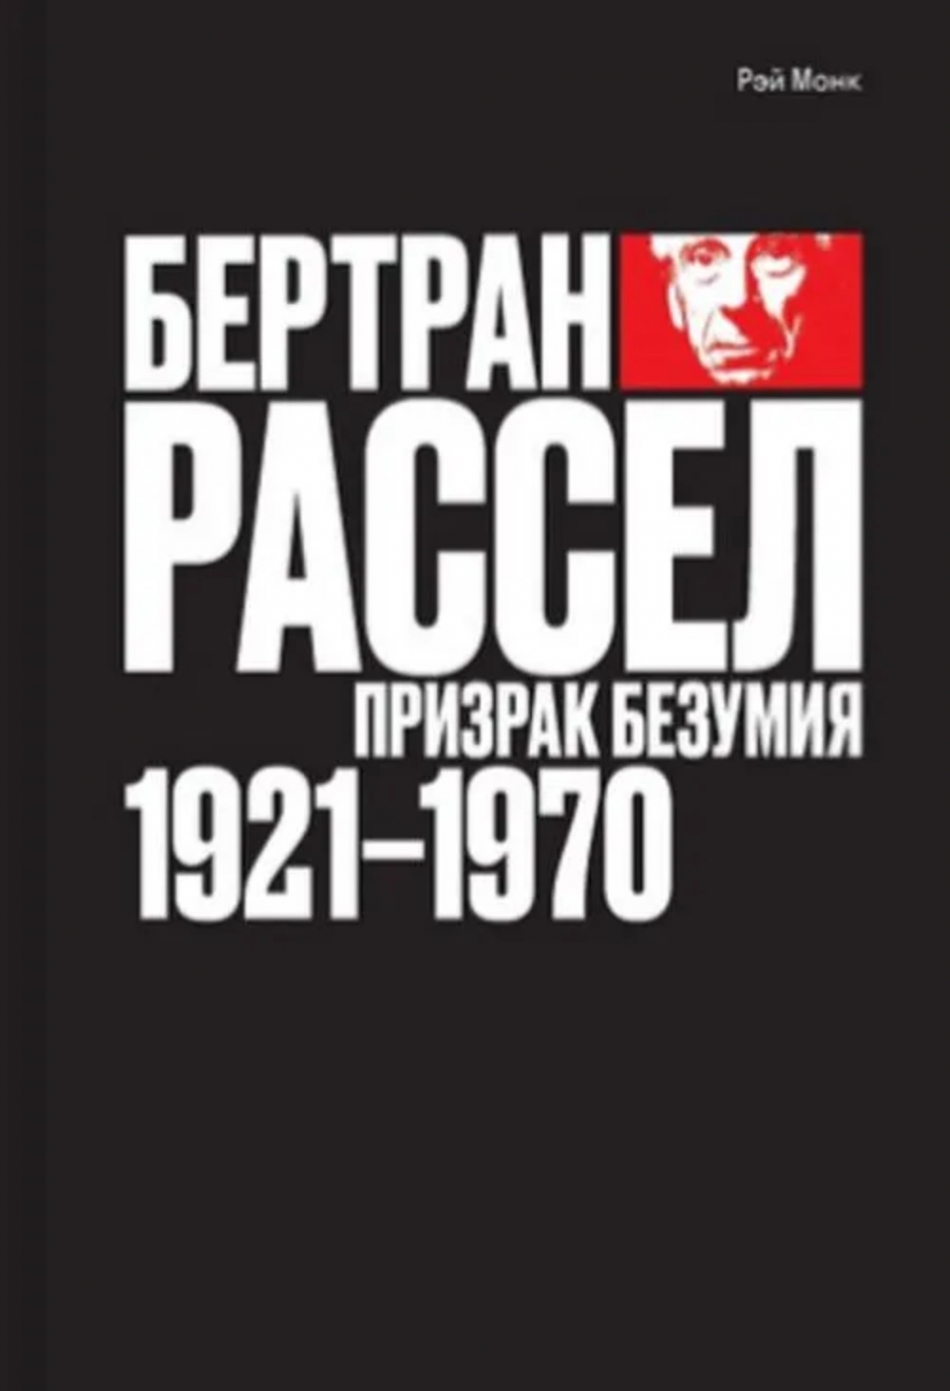  .  :   1921 - 1970.  2 